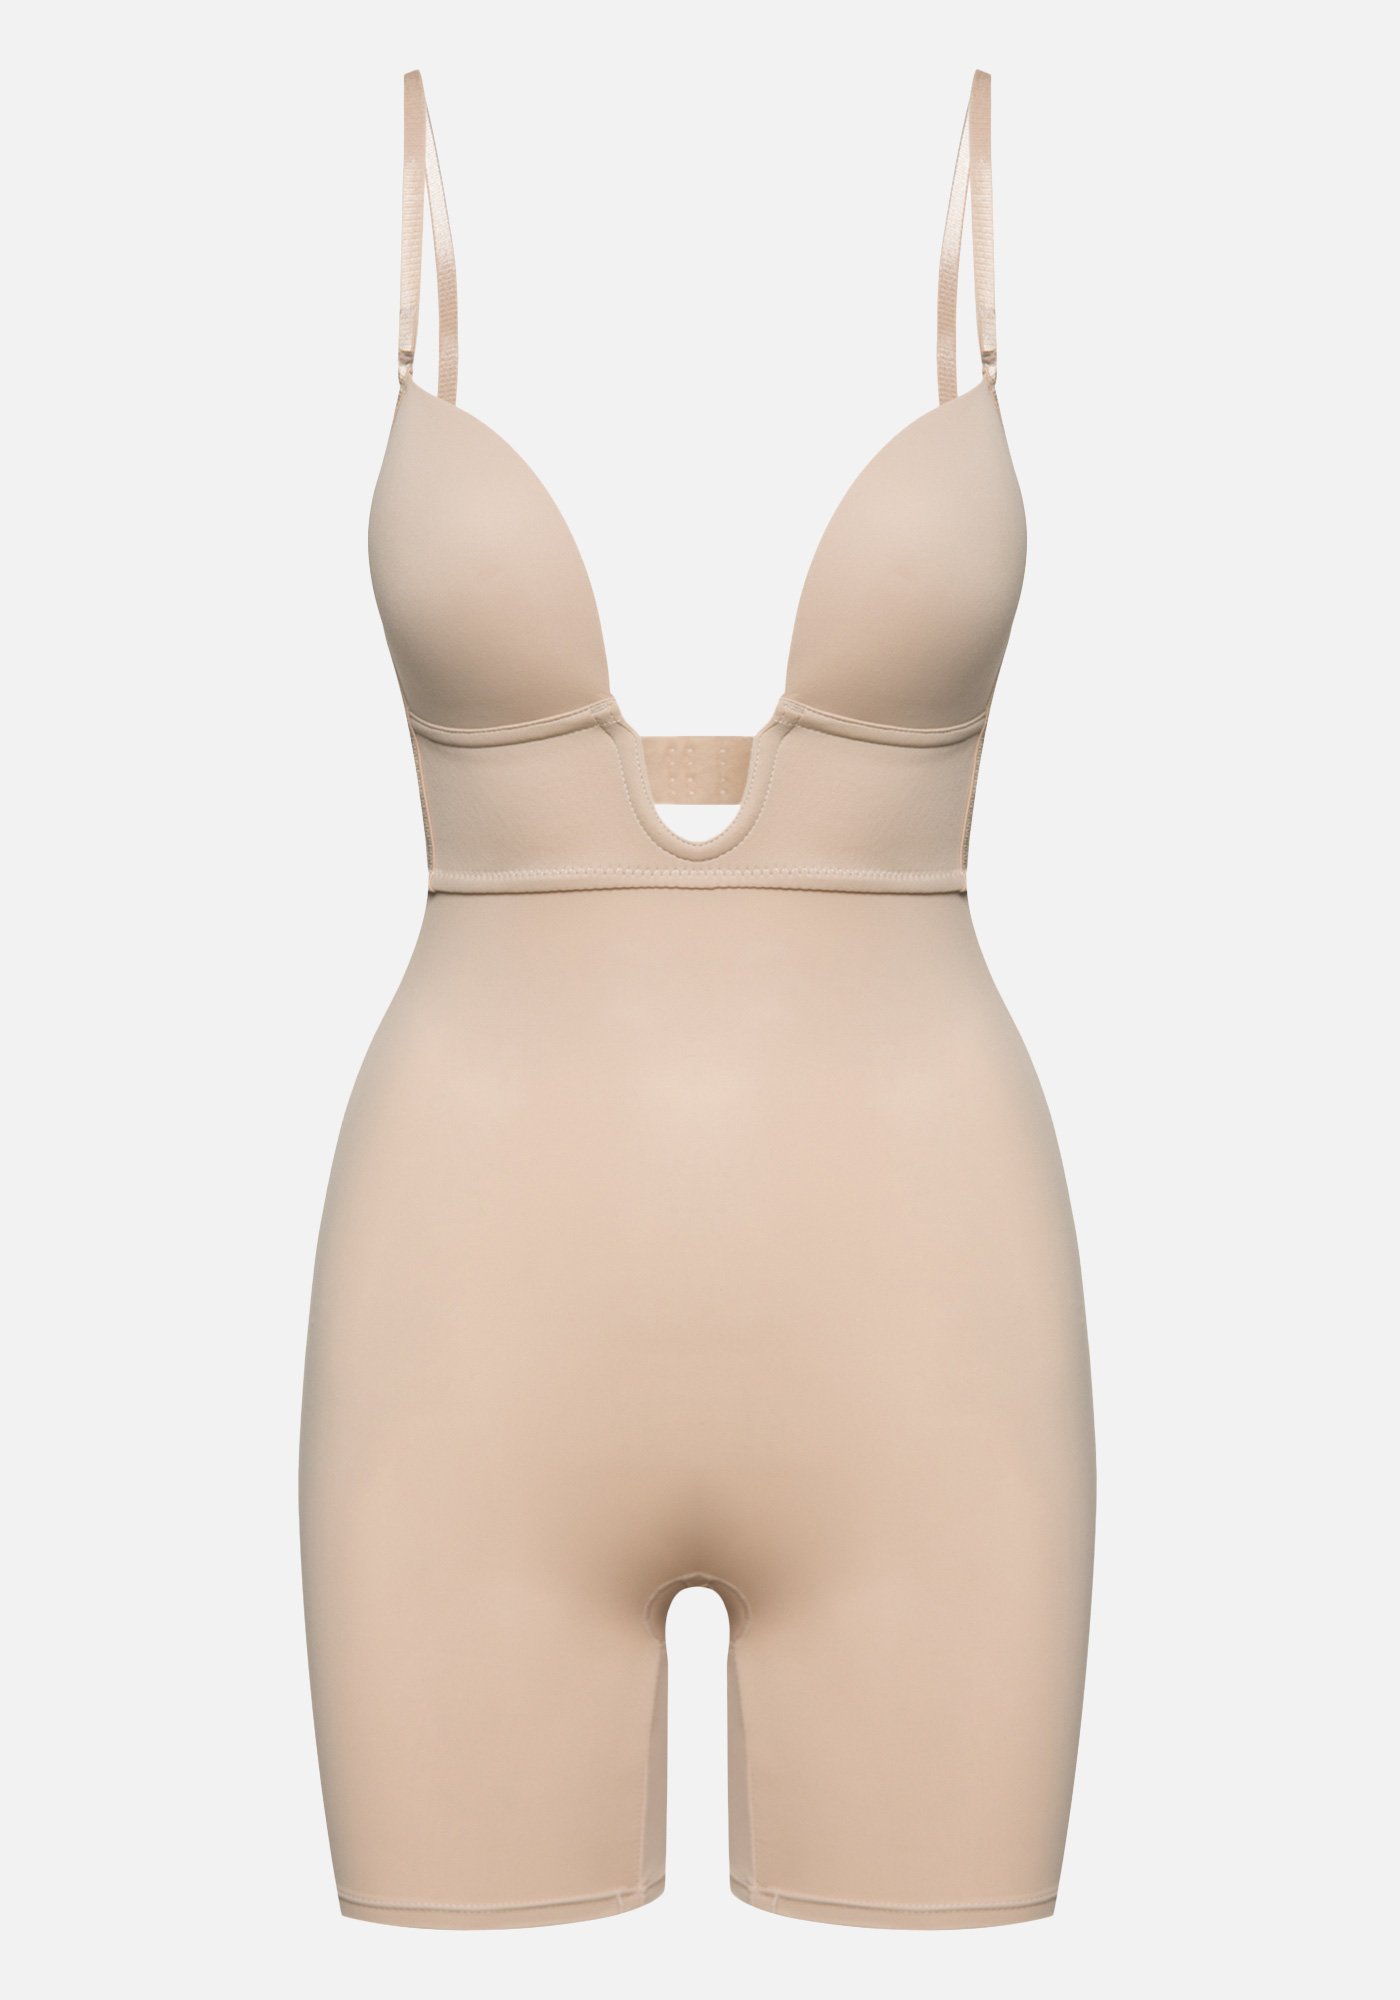 Bebe Women's Full Body Shapewear, Size XL in Soft Nude Spandex/Nylon